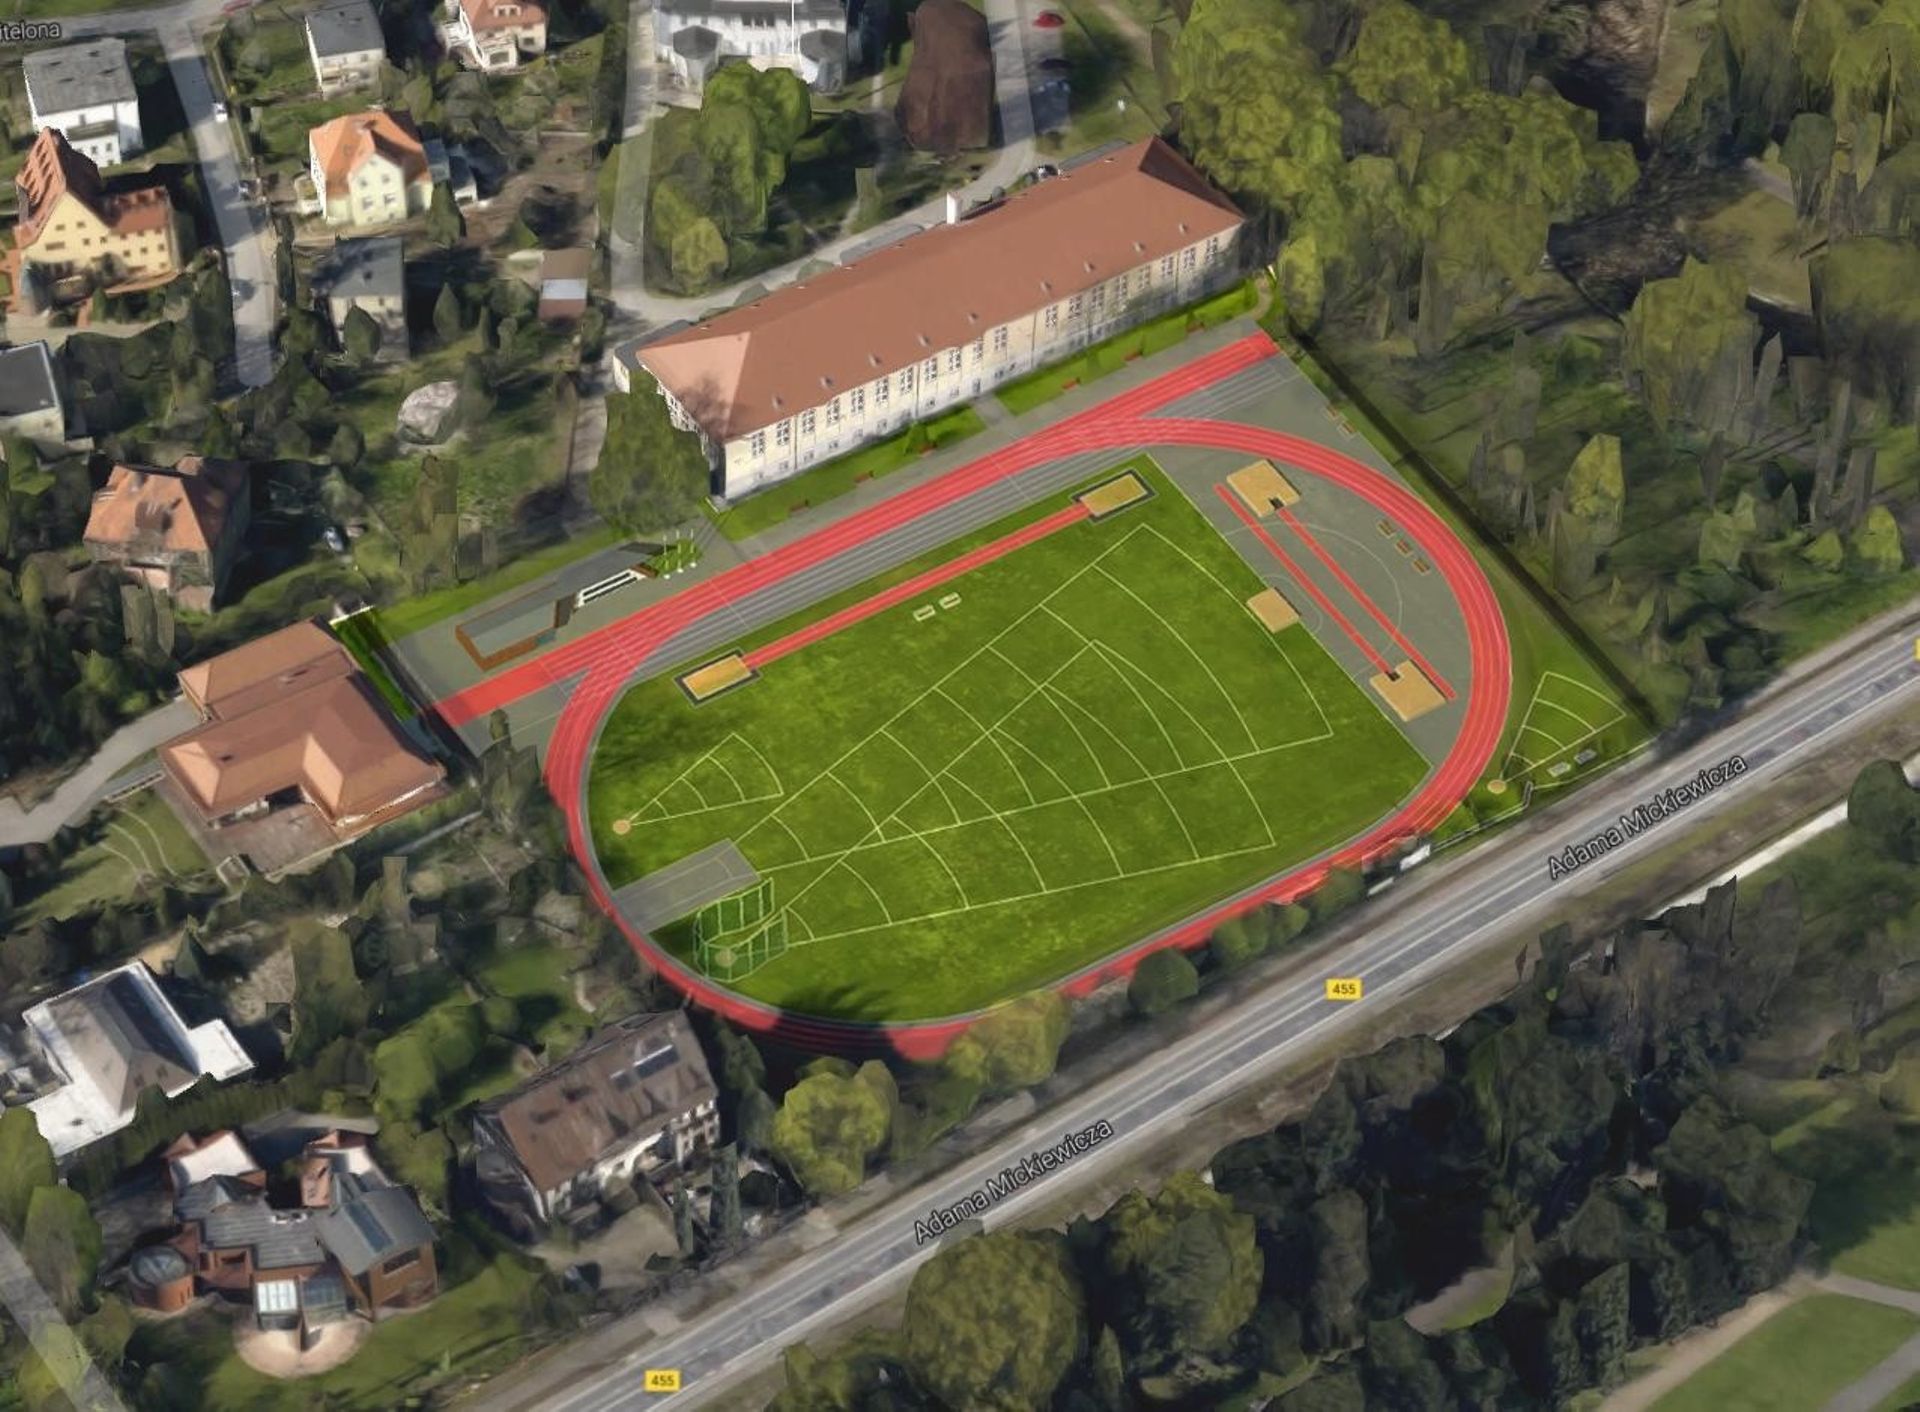 AWF Wrocław za ponad 8 milionów złotych zmodernizuje stadion lekkoatletyczny przy ulicy Witelona